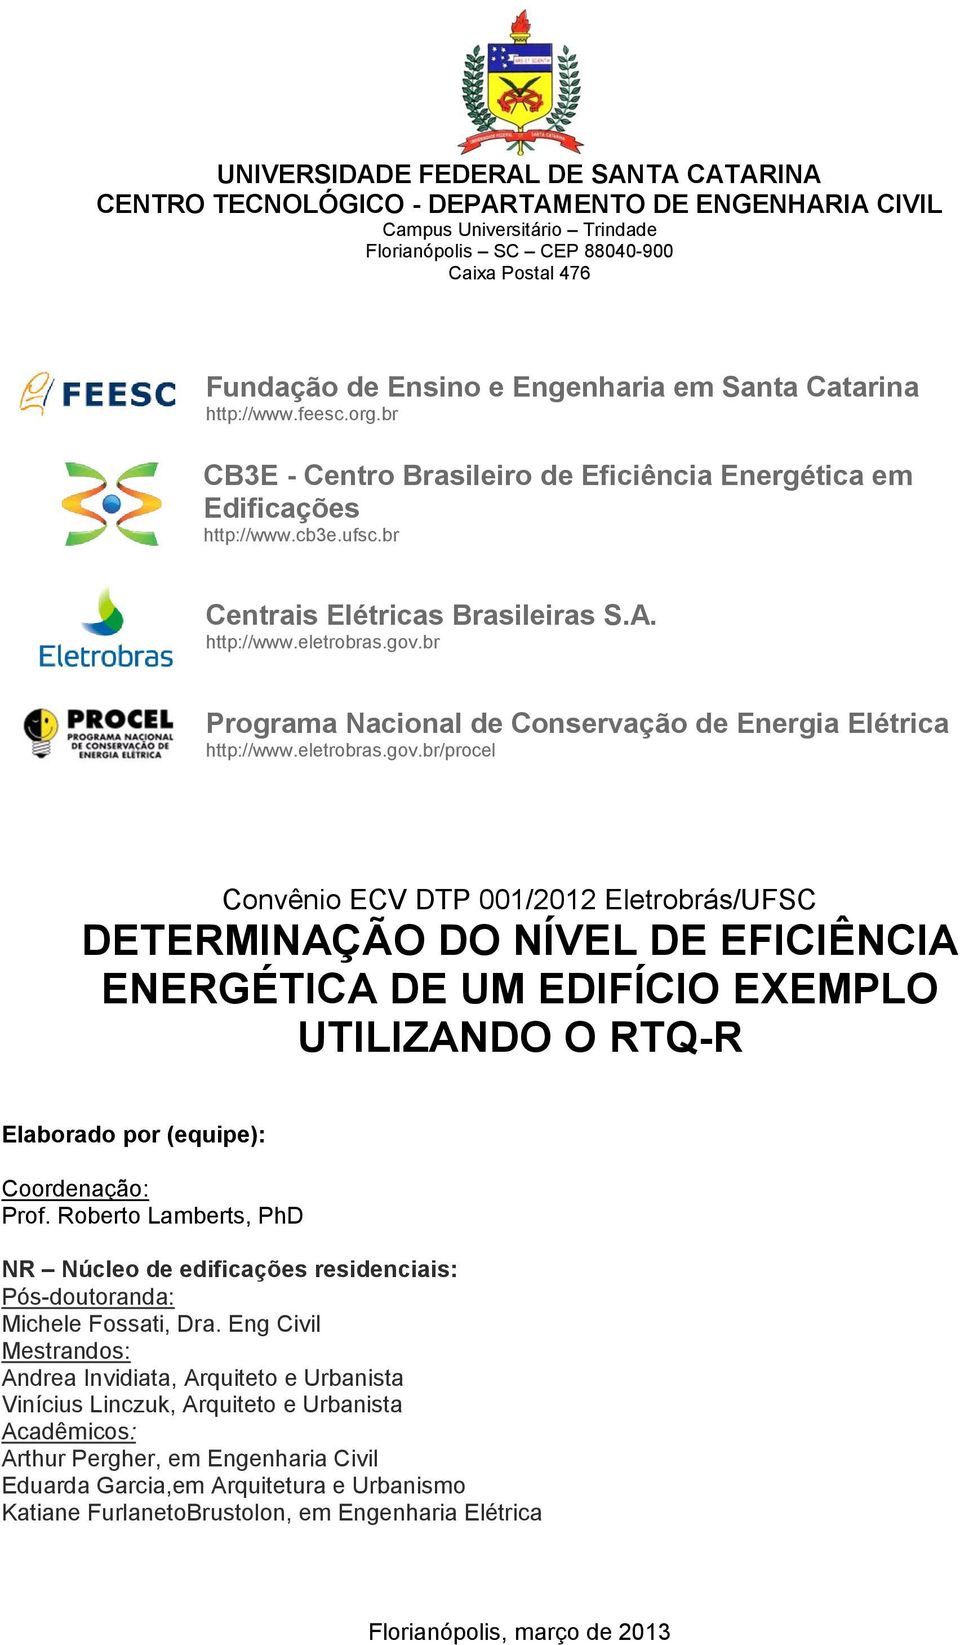 gov.br Programa Nacional de Conservação de Energia Elétrica http://www.eletrobras.gov.br/procel Convênio ECV DTP 001/2012 Eletrobrás/UFSC DETERMINAÇÃO DO NÍVEL DE EFICIÊNCIA ENERGÉTICA DE UM EDIFÍCIO EXEMPLO UTILIZANDO O RTQ-R Elaborado por (equipe): Coordenação: Prof.